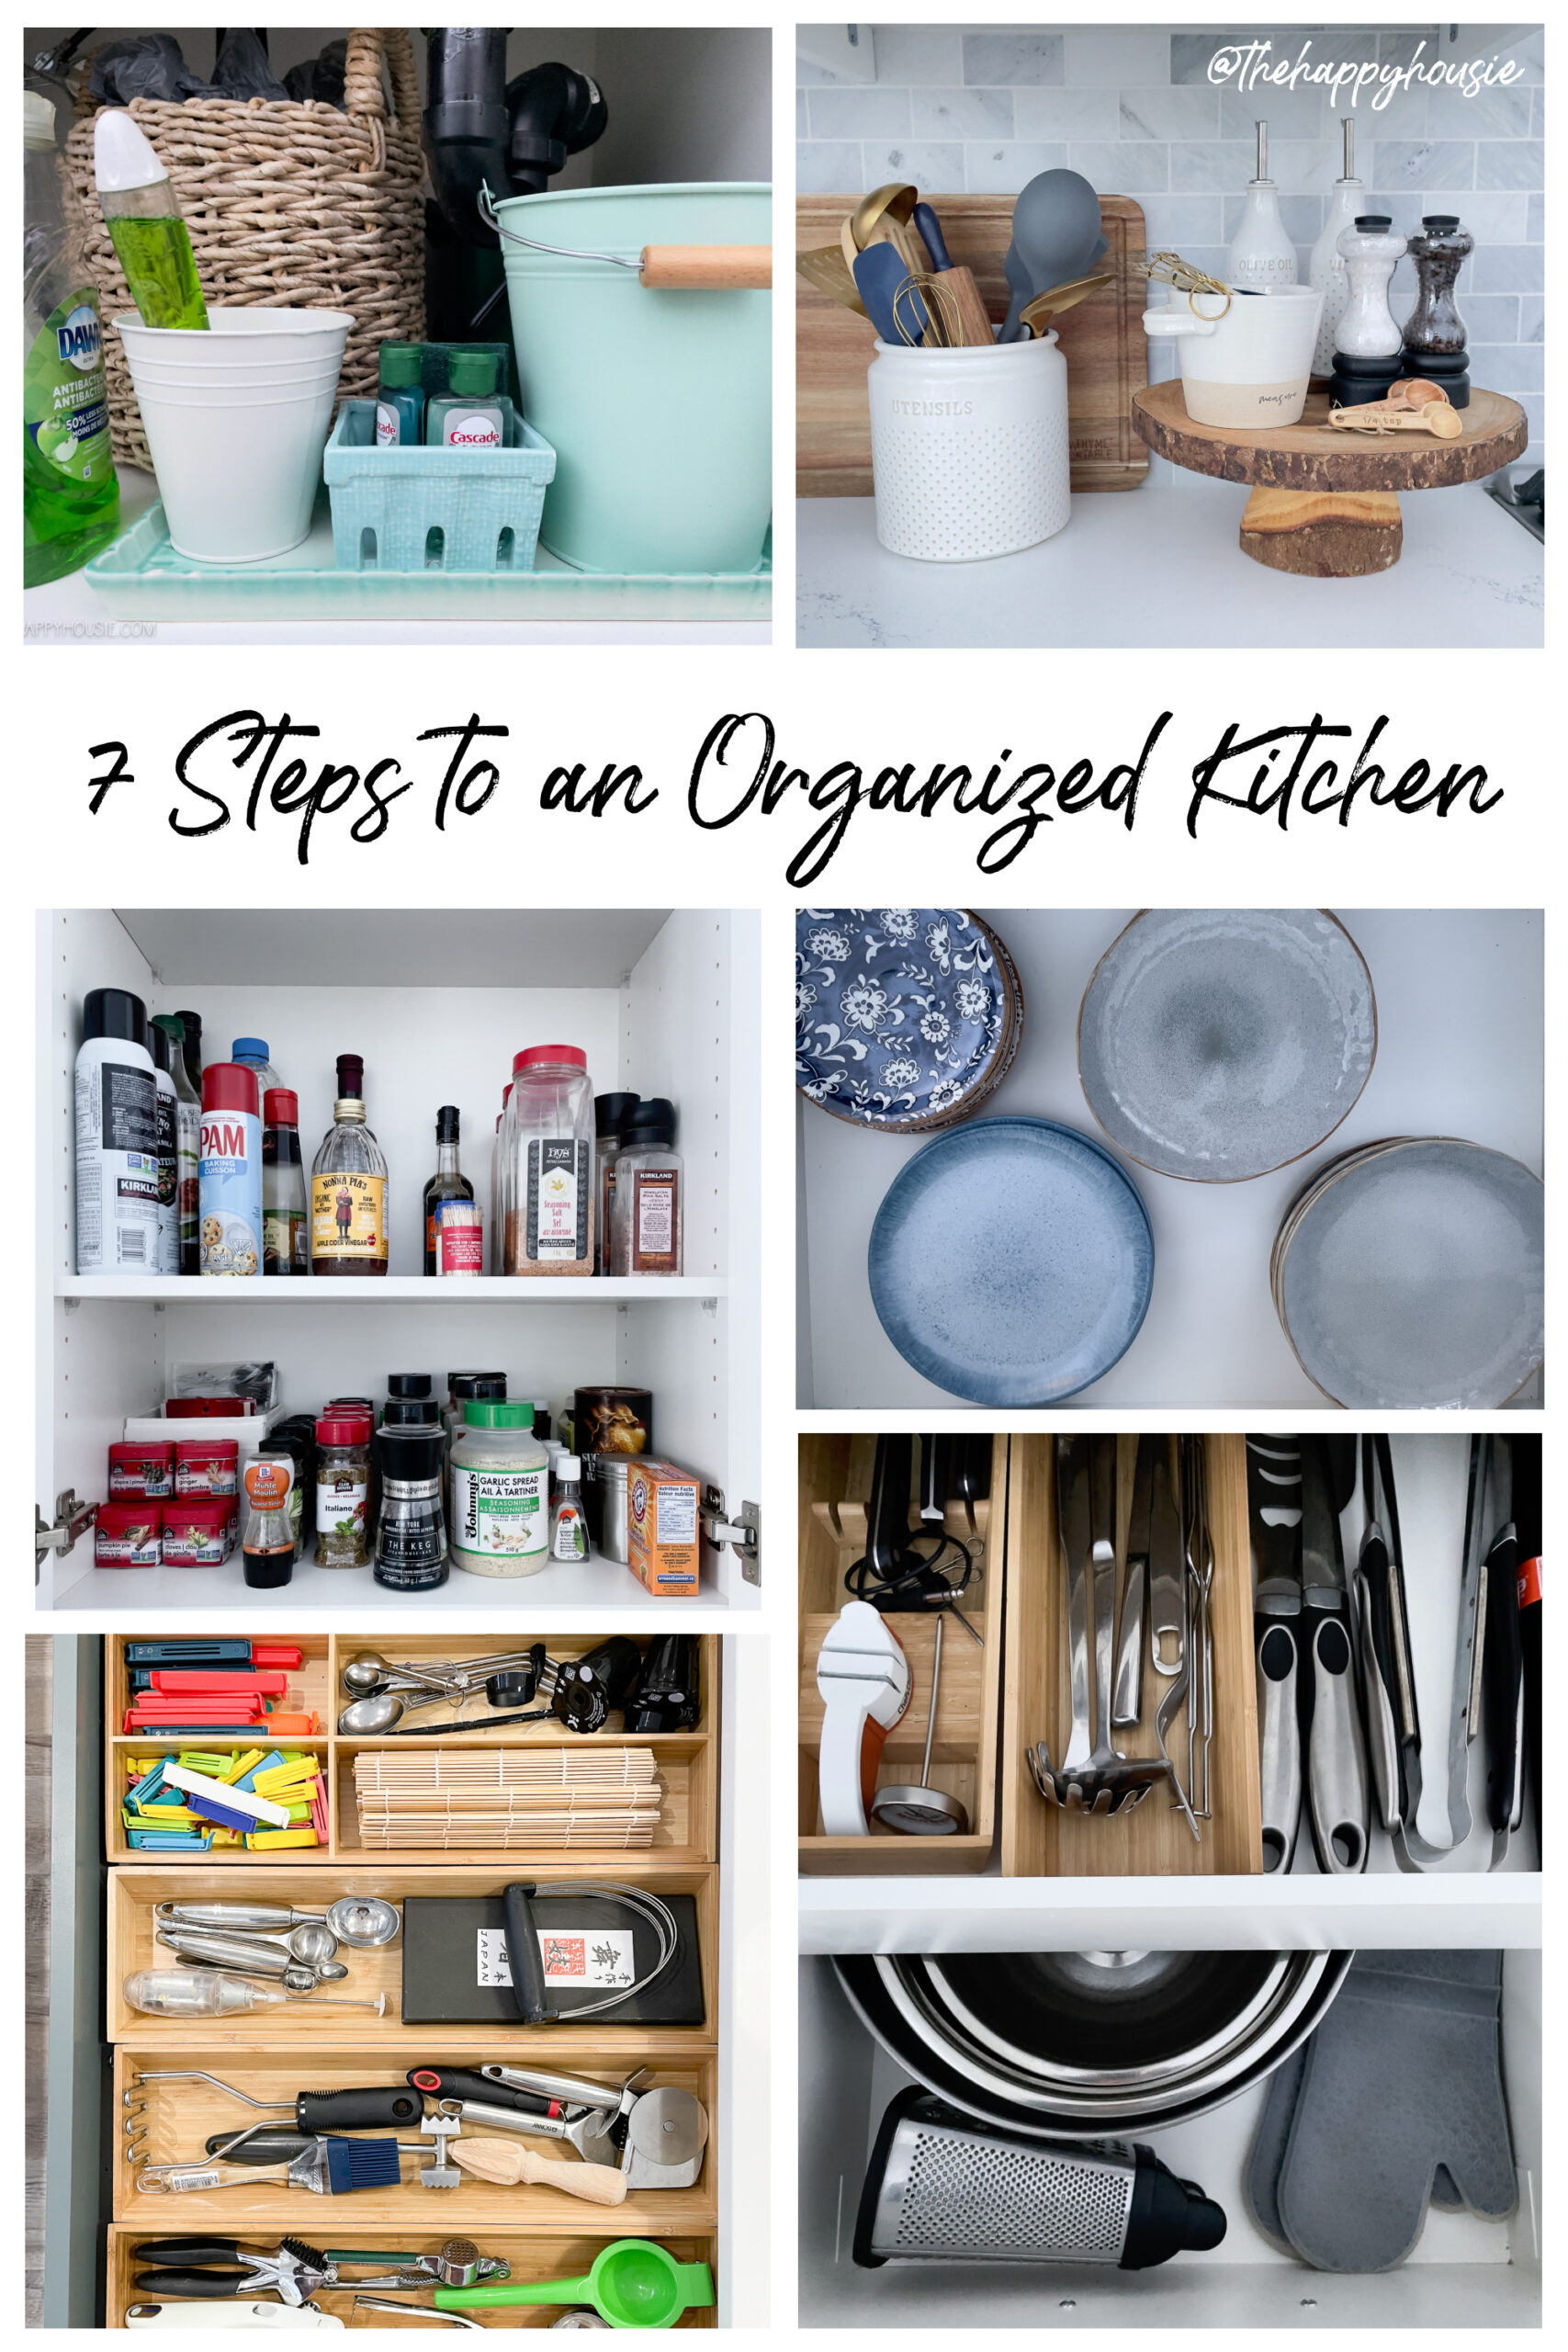 30+ Best Kitchen Organization Ideas - Elegant Ways to Organize Your Kitchen